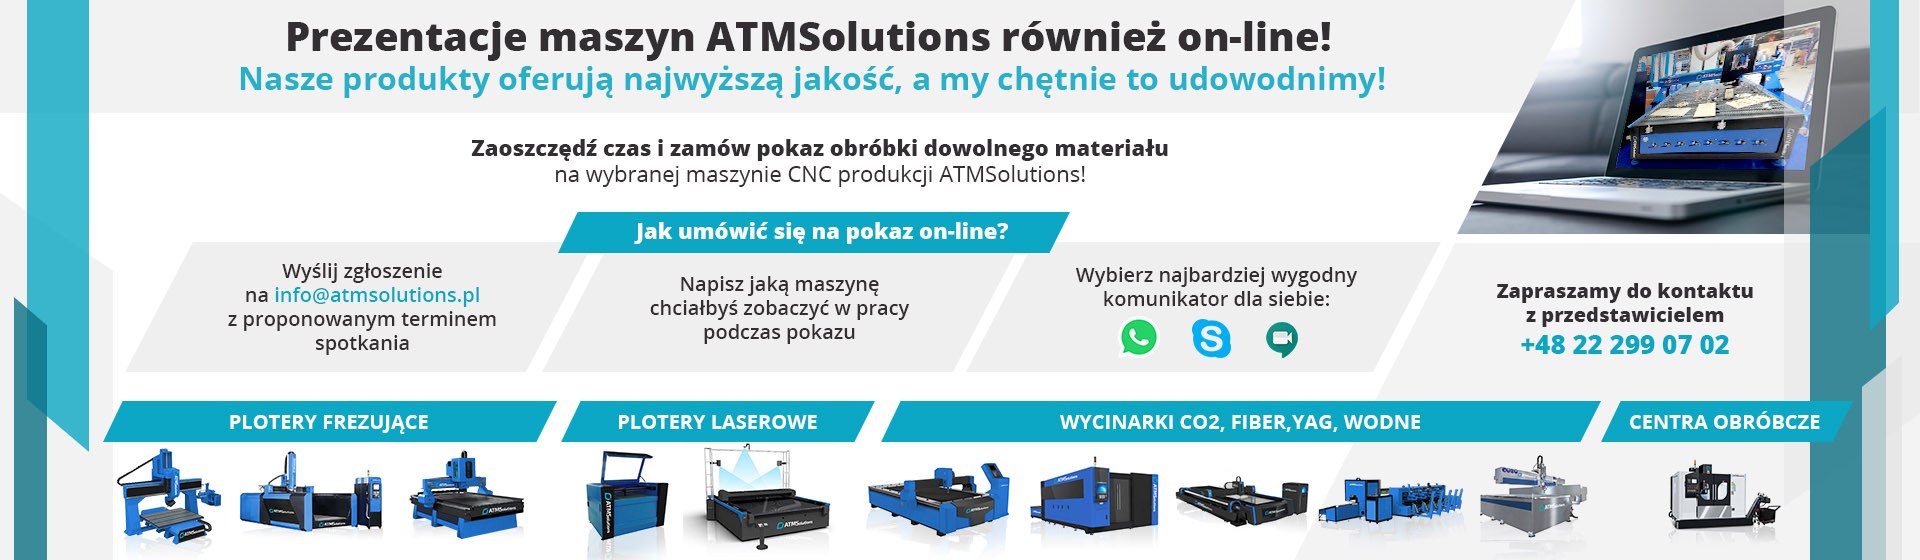 Prezentacje maszyn ATMSolutions również on-line!